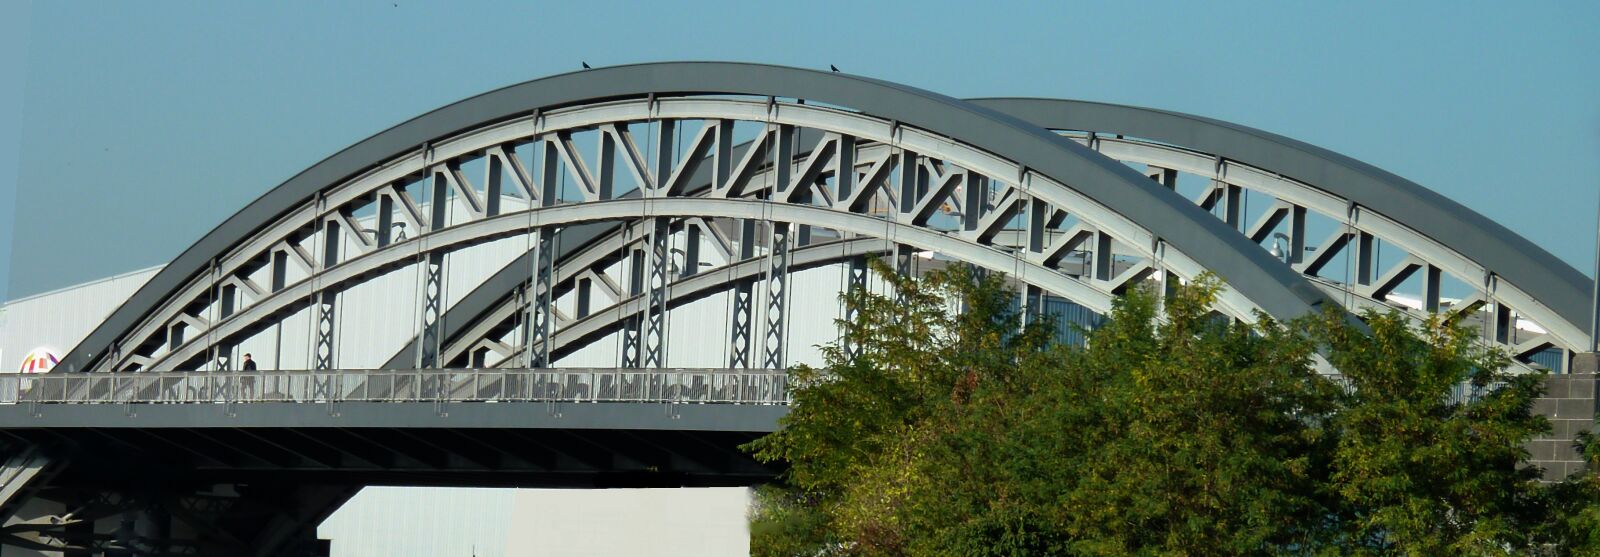 Panasonic DMC-TZ7 sample photo. Bridge, sw, architecture photography